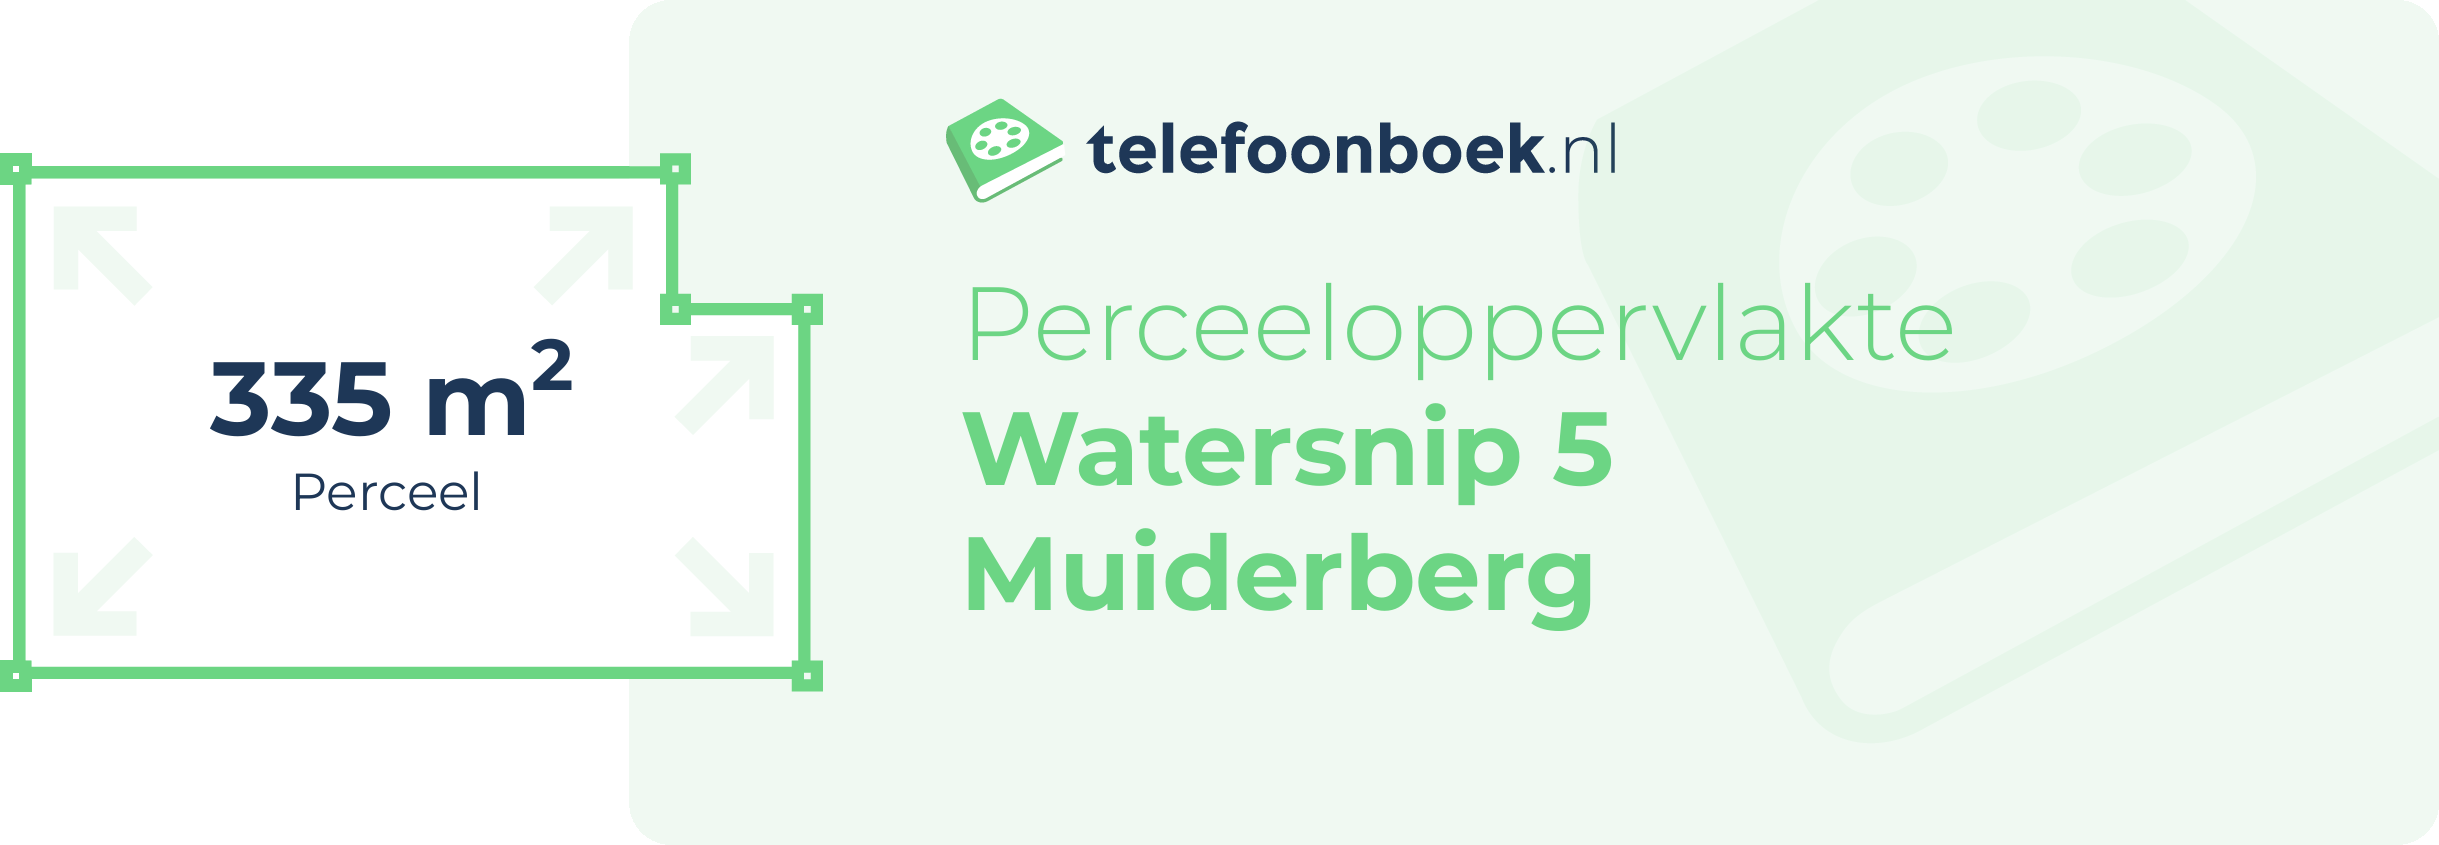 Perceeloppervlakte Watersnip 5 Muiderberg